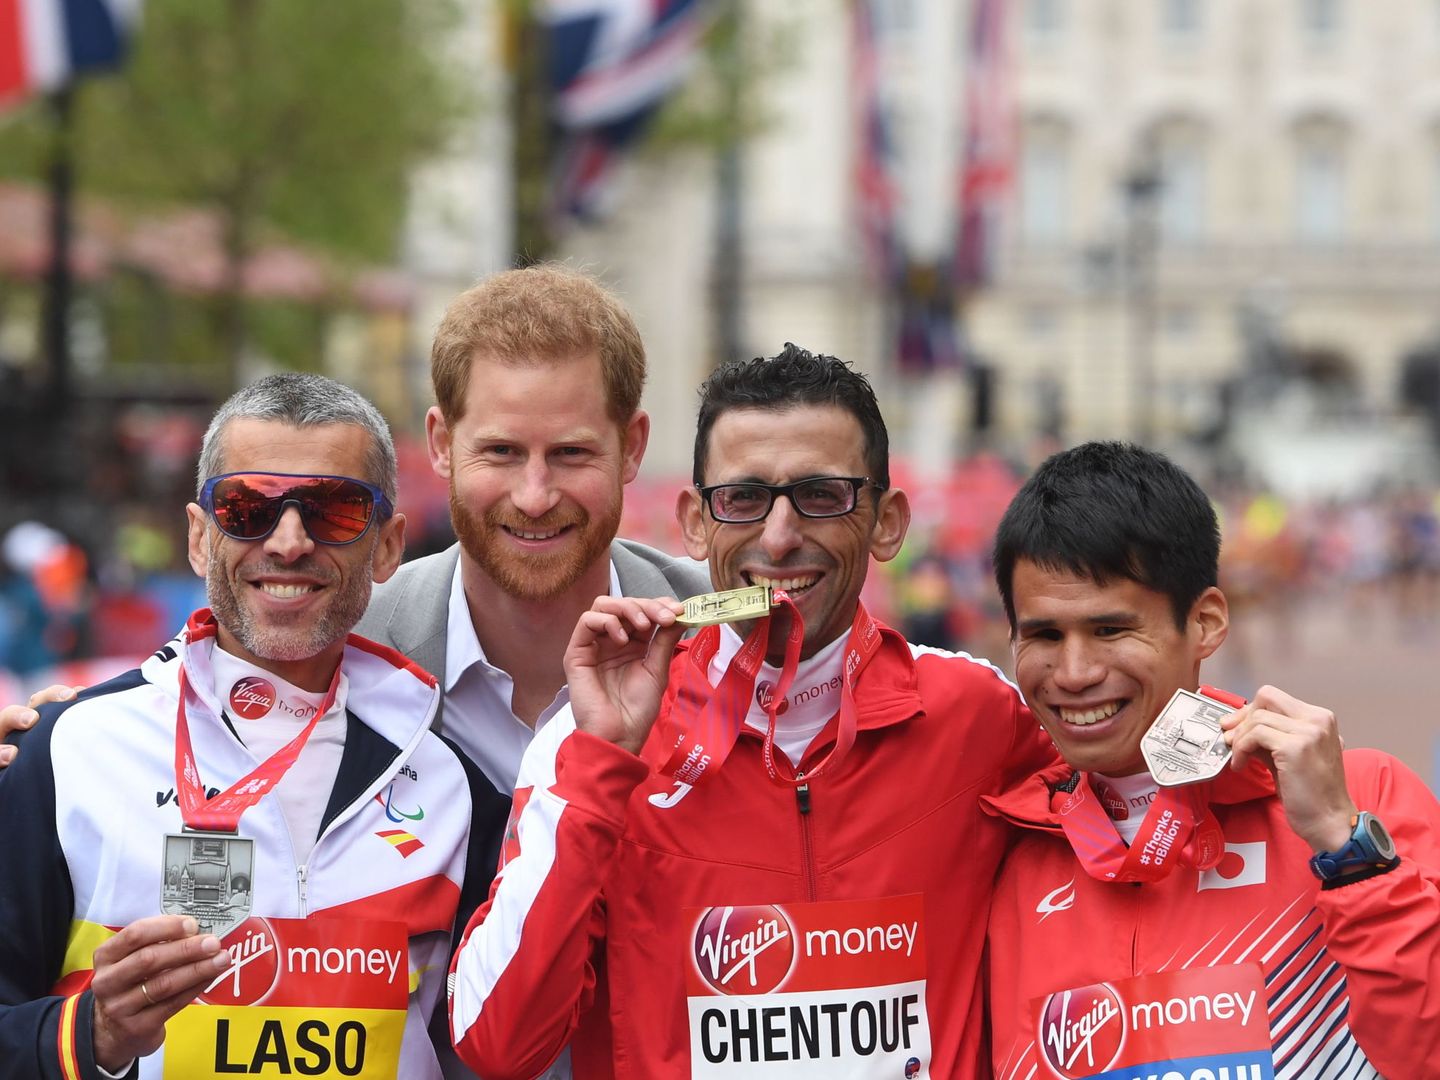 A la izquierda, Alberto Suárez Laso, segundo en la maratón T11 12 de Londres, junto al príncipe Harry, en 2019.